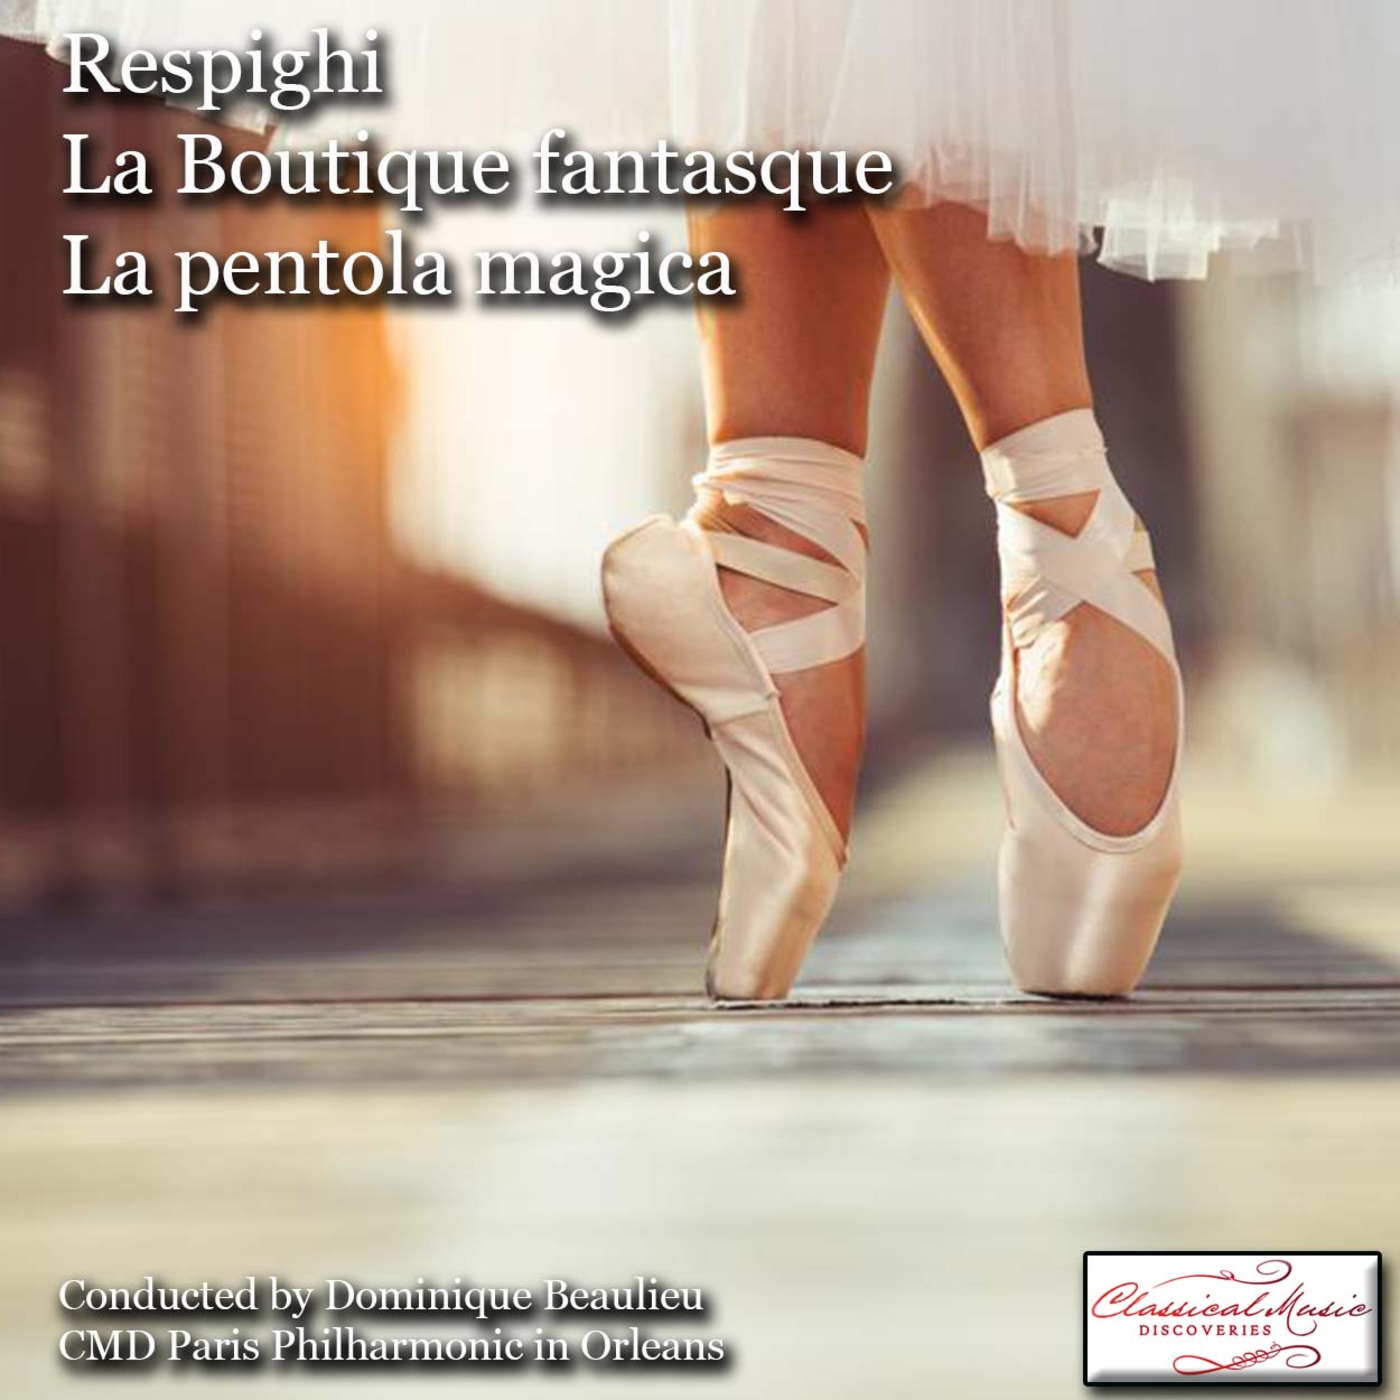 Episode 84: 17084 Respighi: La boutique fantasque/La pentola magica